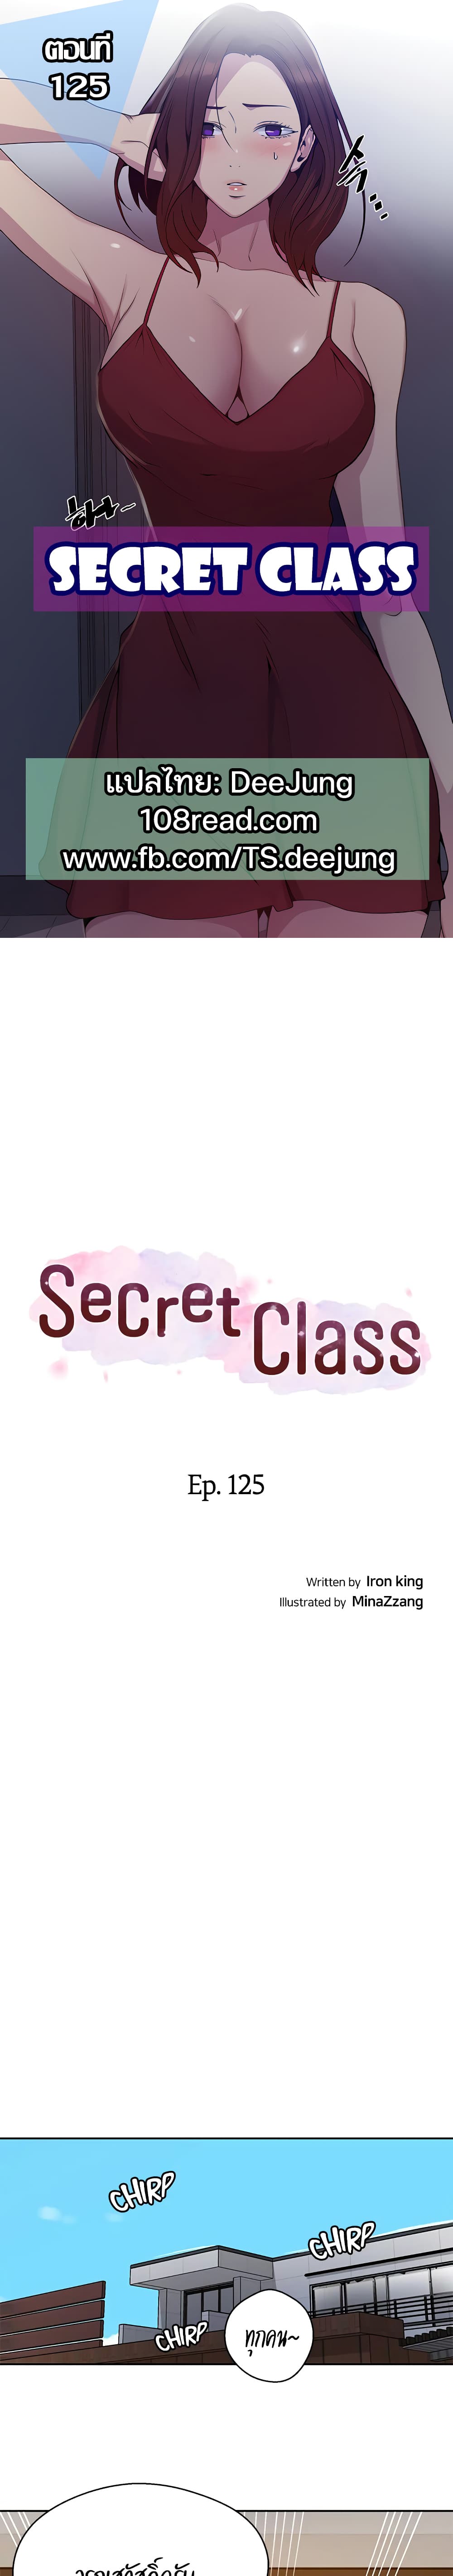 Secret Class 125 (1)